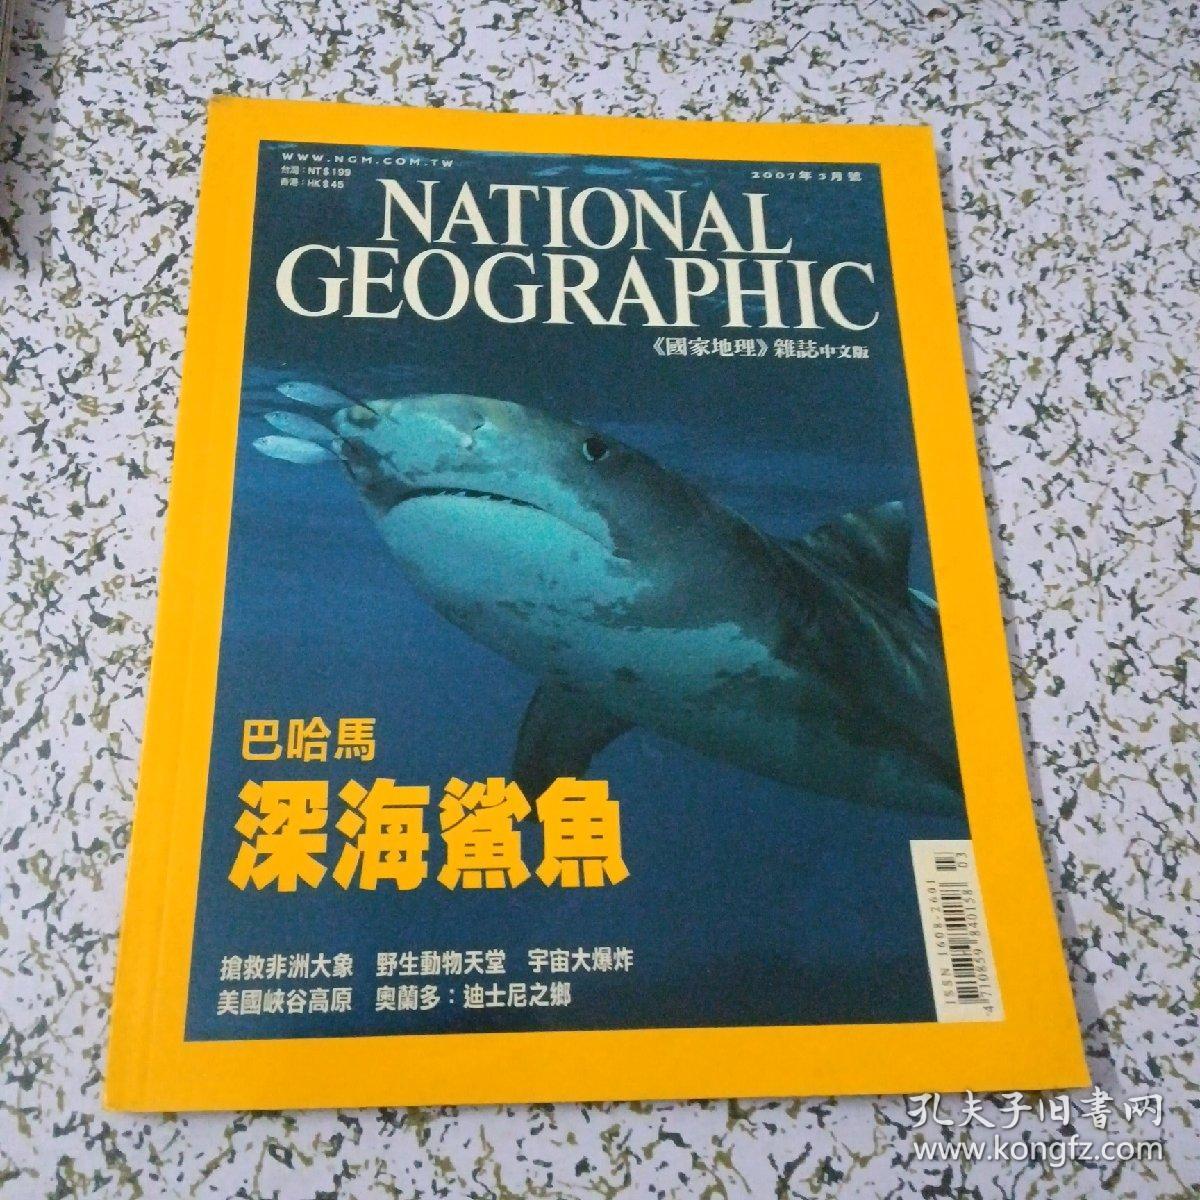 《国家地理》杂志     巴哈马  深海鲨鱼（中文版）2007年3月号